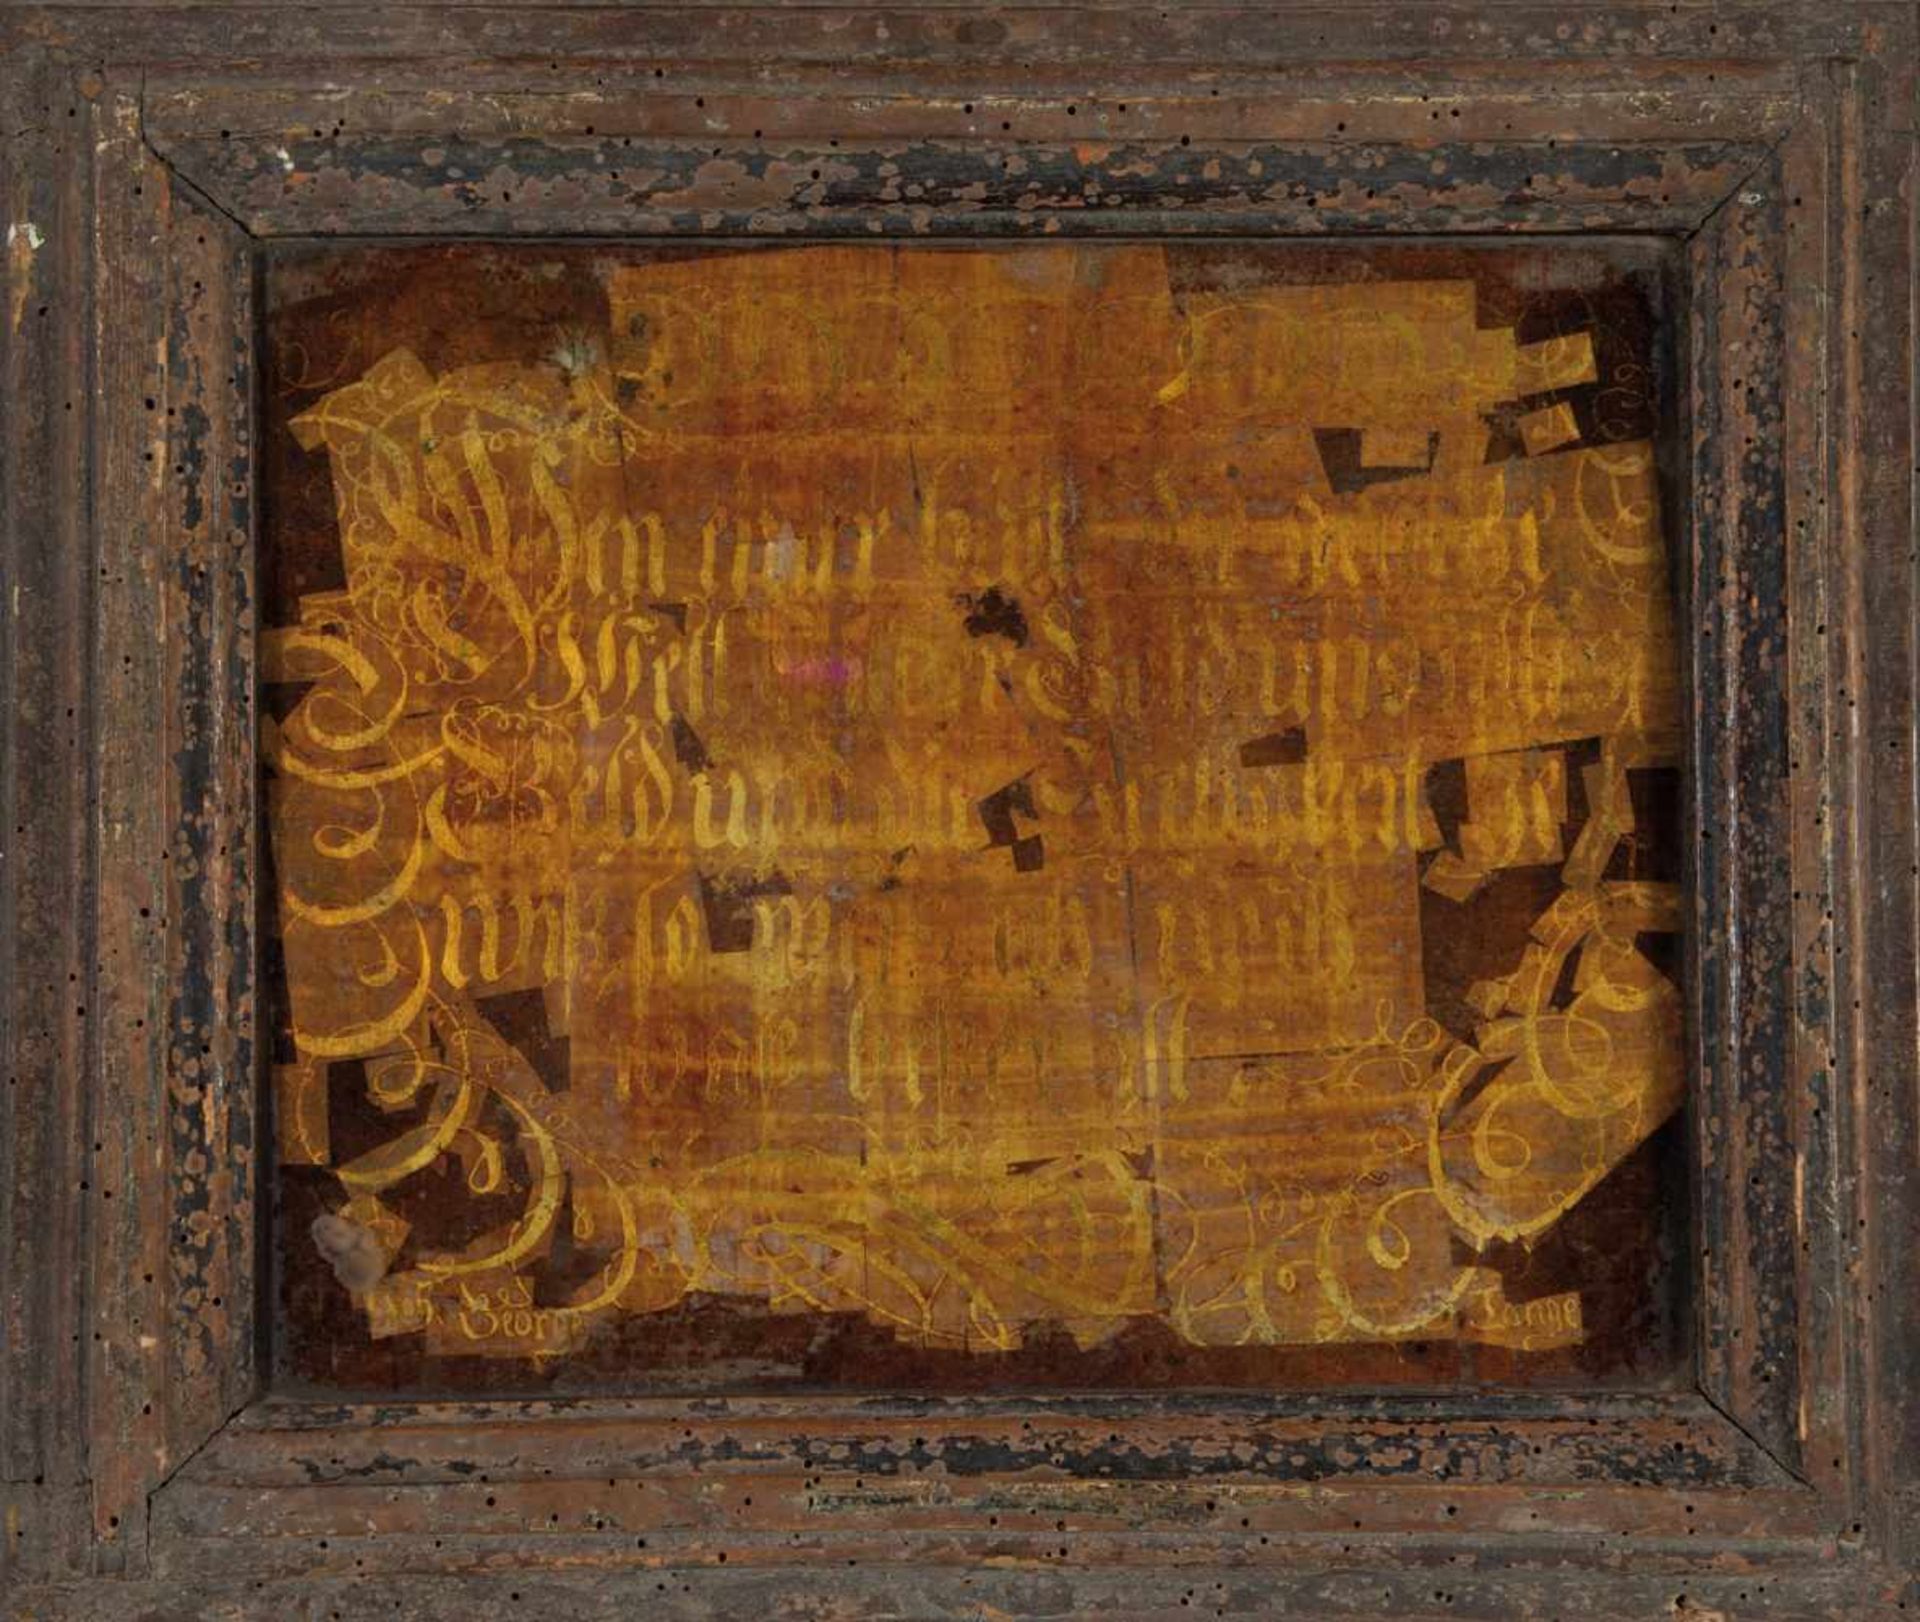 Spruchbildsigniert und datiert "Joh. George Lange 1726" Hinterglas in Goldfolie vor braunem Grund